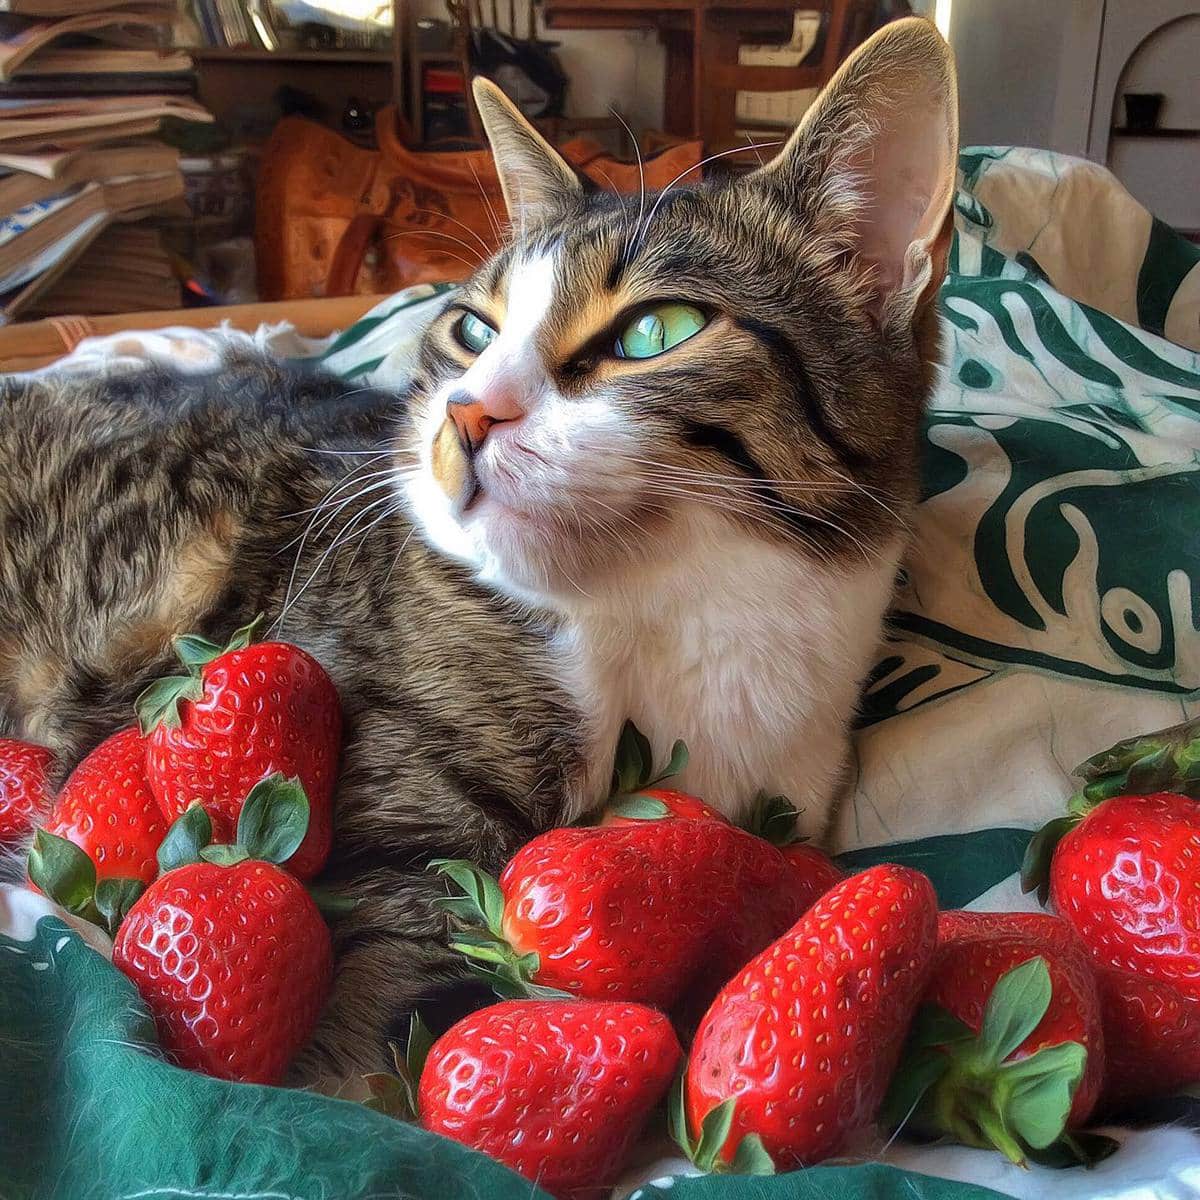 16 фотографий от итальянки, которая так круто фотографирует своих котов, что в них невозможно не влюбиться 59